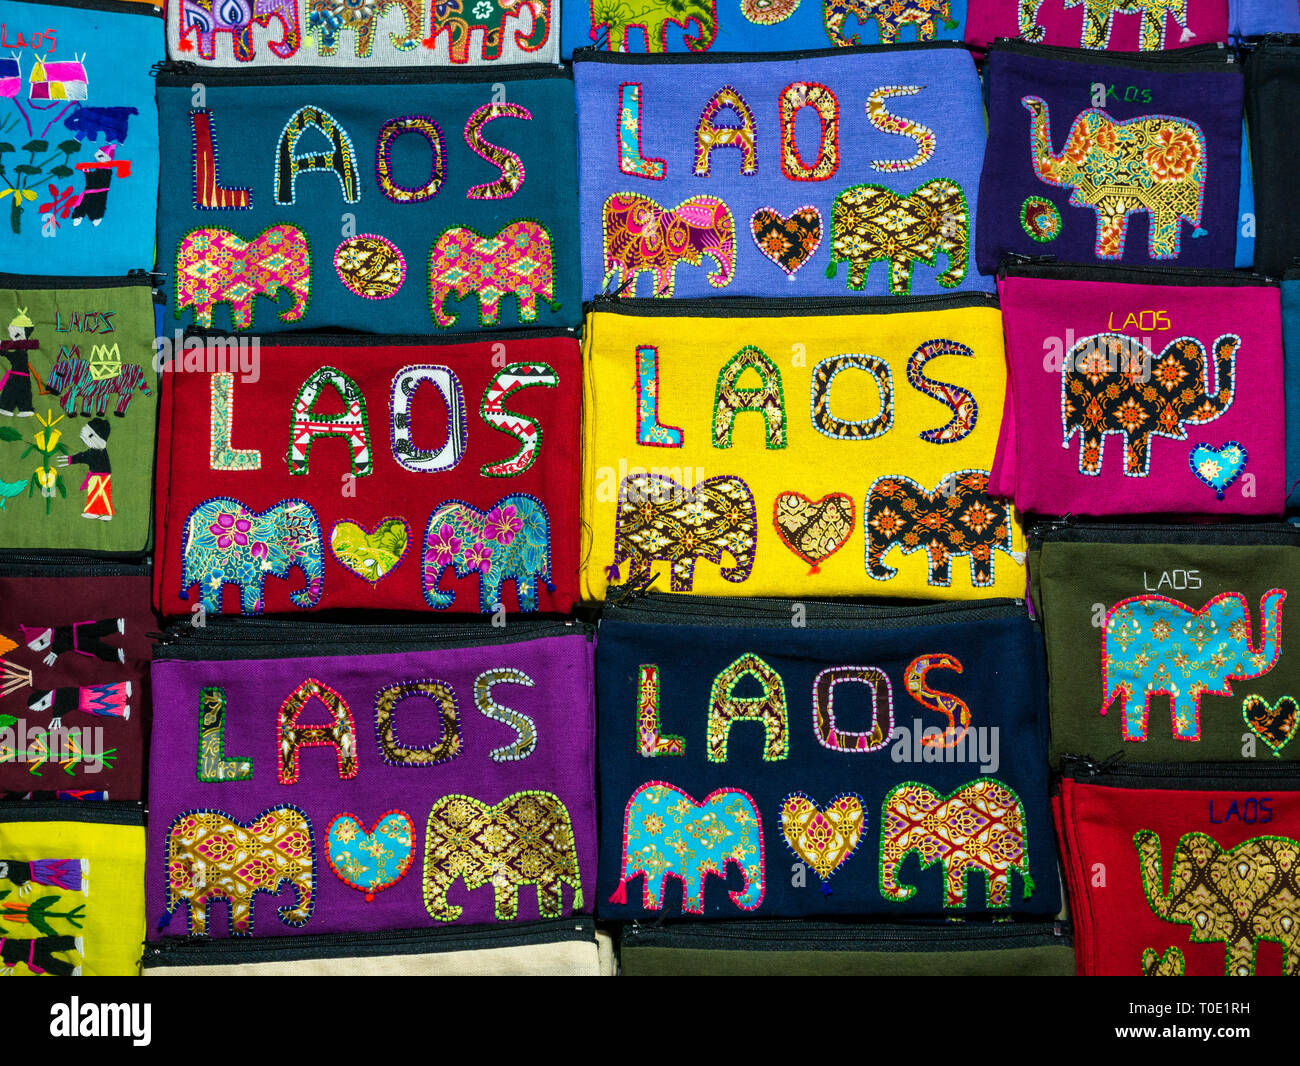 Visualización de coloridos bolsos con Laos y elefantes recuerdos turísticos pegado al mercado nocturno, en Luang Prabang, Laos, Sudeste de Asia Foto de stock